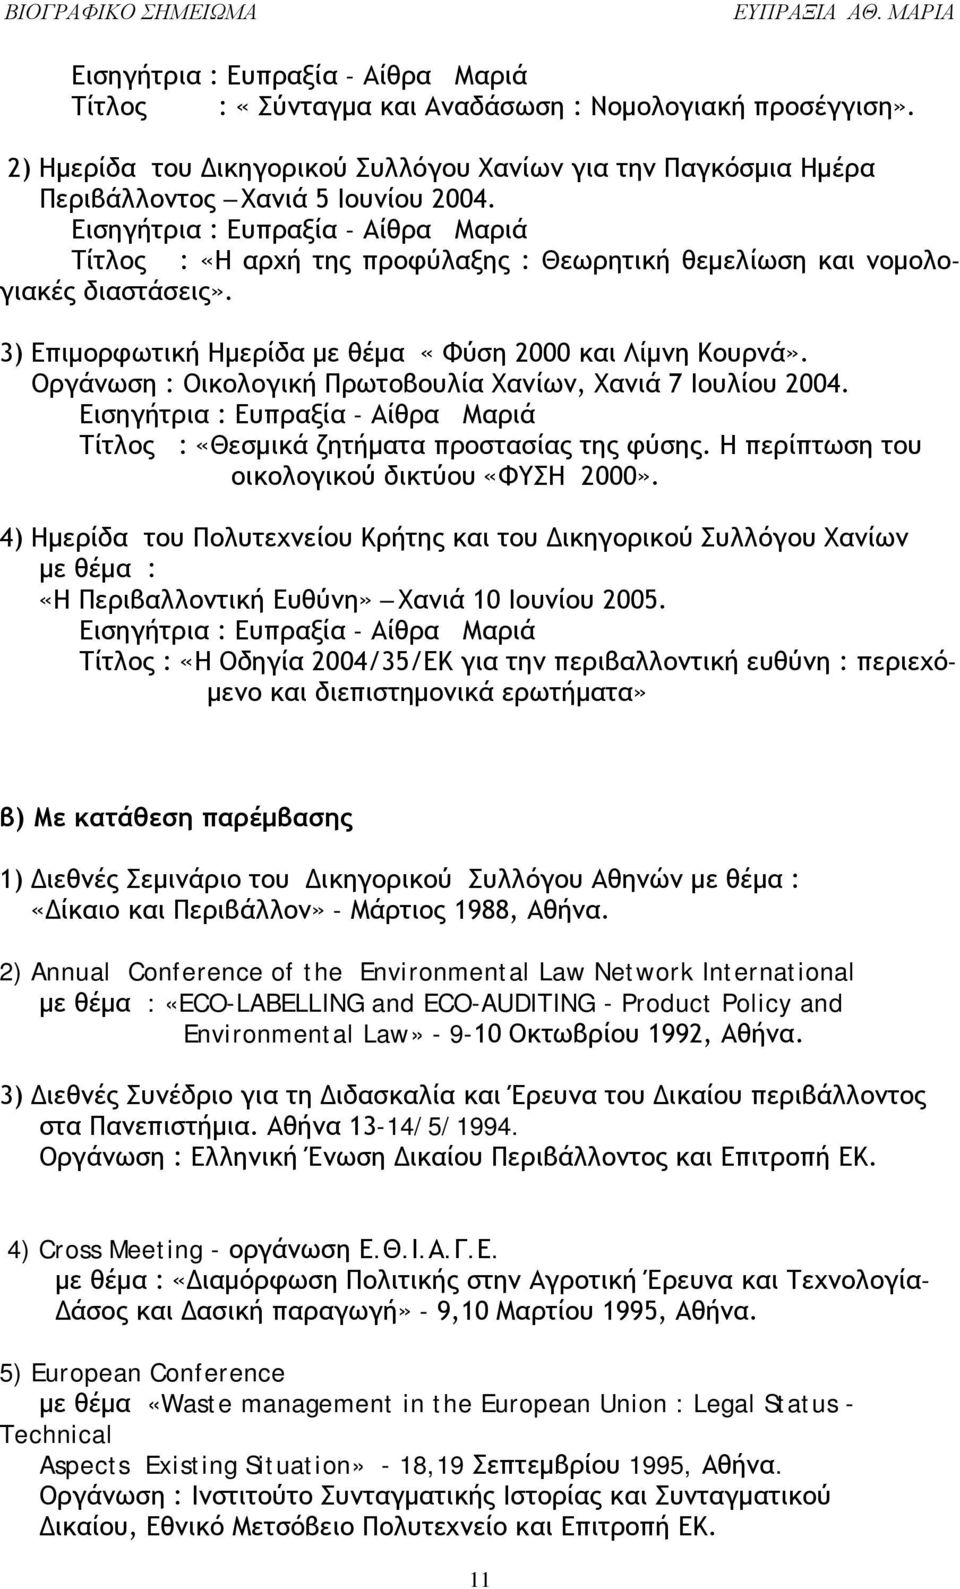 Οργάνωση : Οικολογική Πρωτοβουλία Χανίων, Χανιά 7 Ιουλίου 2004. Εισηγήτρια : Ευπραξία - Αίθρα Μαριά Τίτλος : «Θεσμικά ζητήματα προστασίας της φύσης. Η περίπτωση του οικολογικού δικτύου «ΦΥΣΗ 2000».